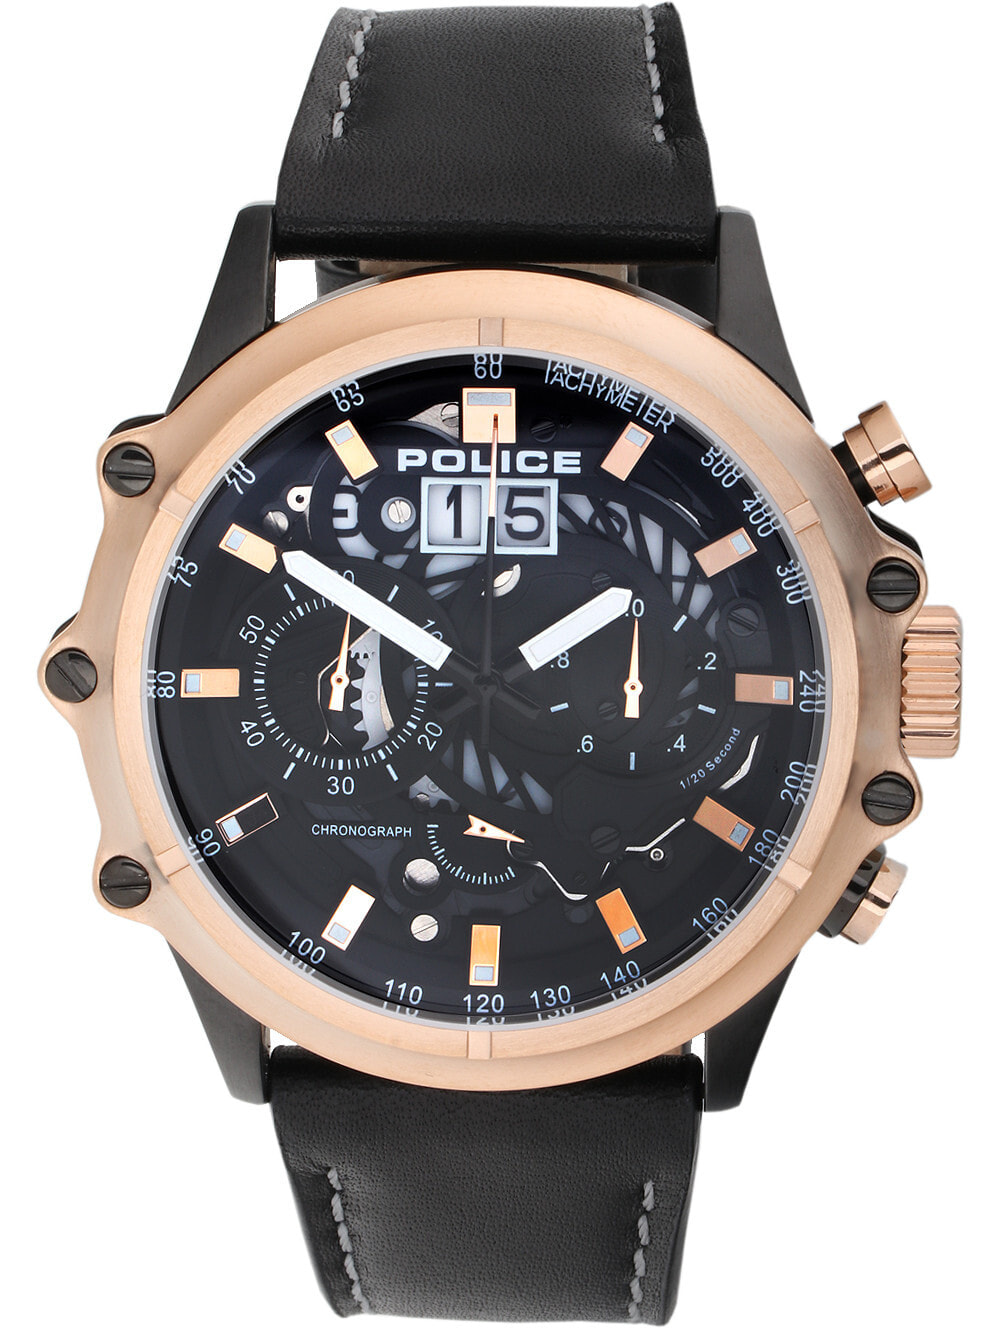 Мужские наручные часы с черным кожаным ремешком Police PL16018JSBR.02 Luang chronograph 49mm 3ATM